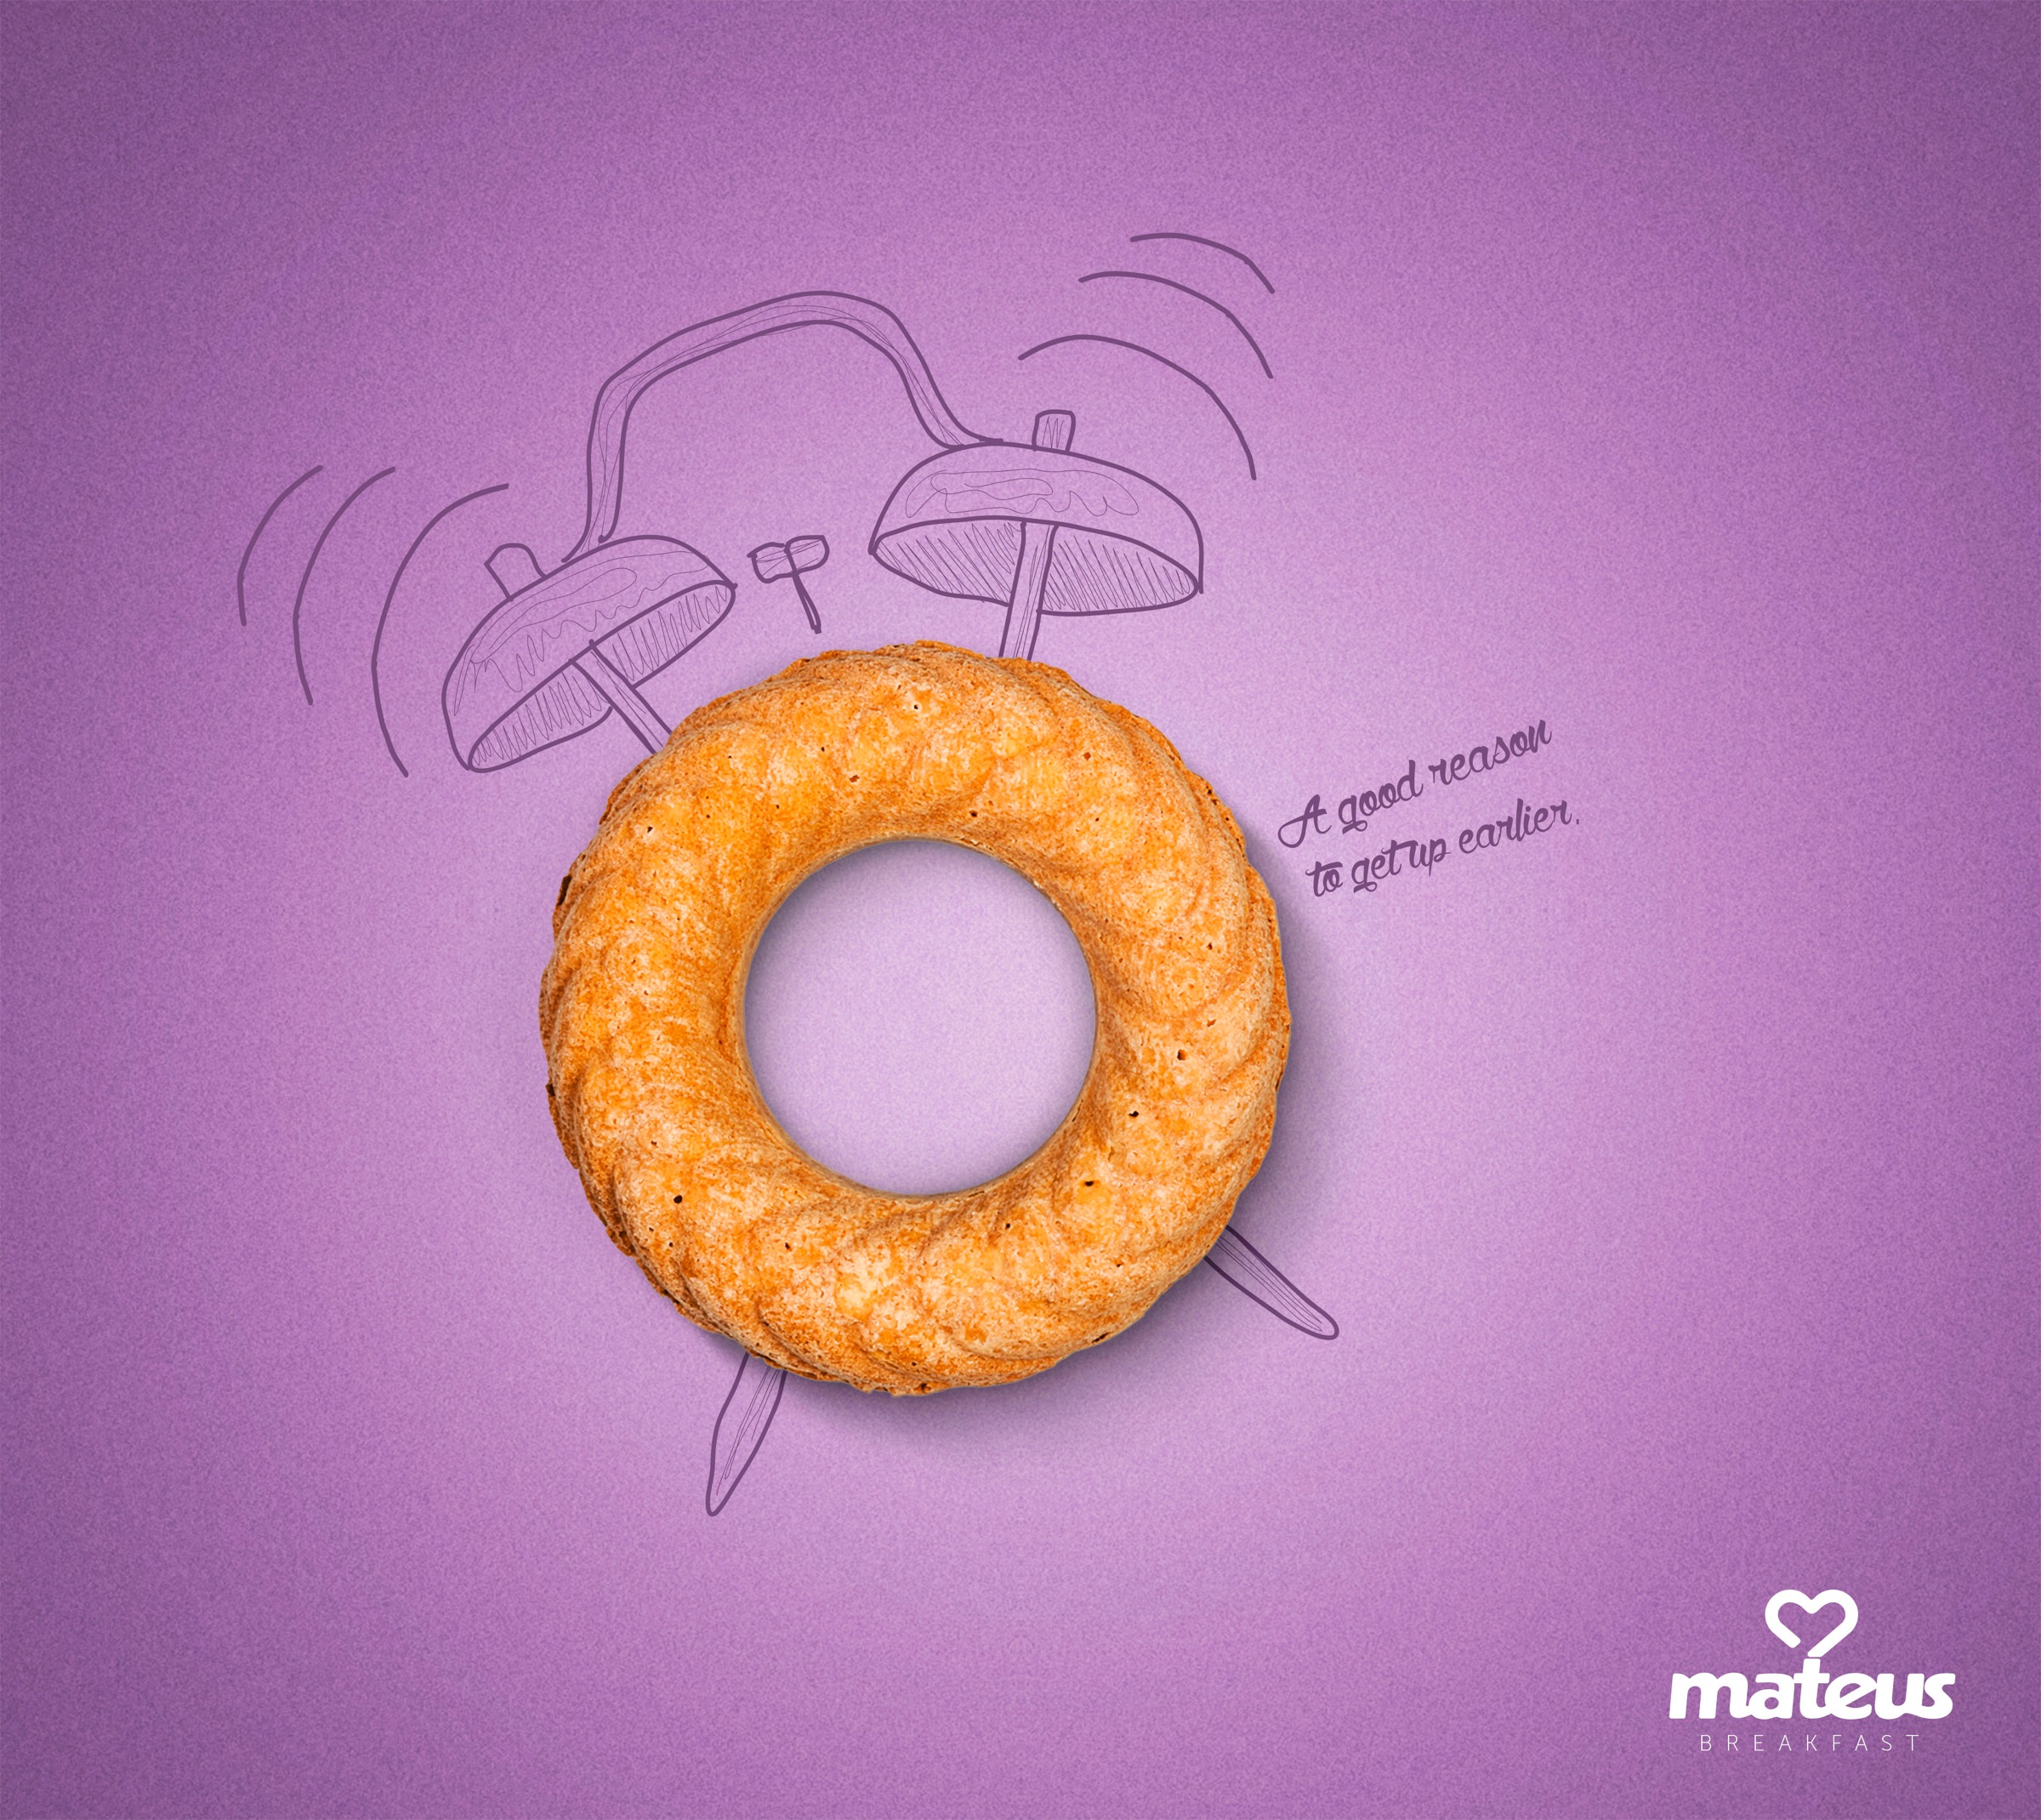 巴西食品创意海报设计mateus:一个很好的理由起床